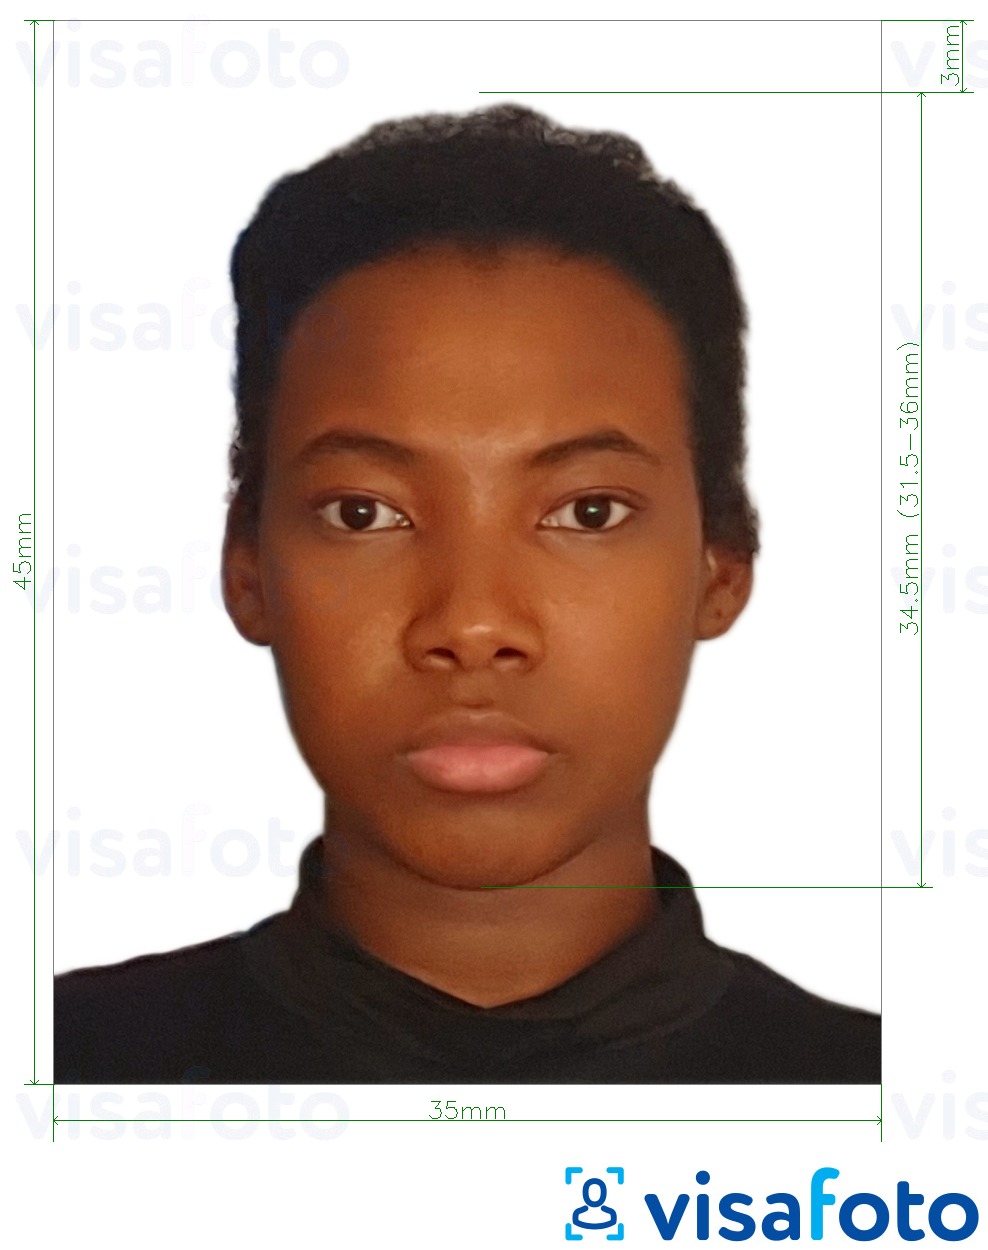 Primjer fotografije za Burkina Faso viza 4,5x3,5 cm (45x35 mm) s točno određenom veličinom